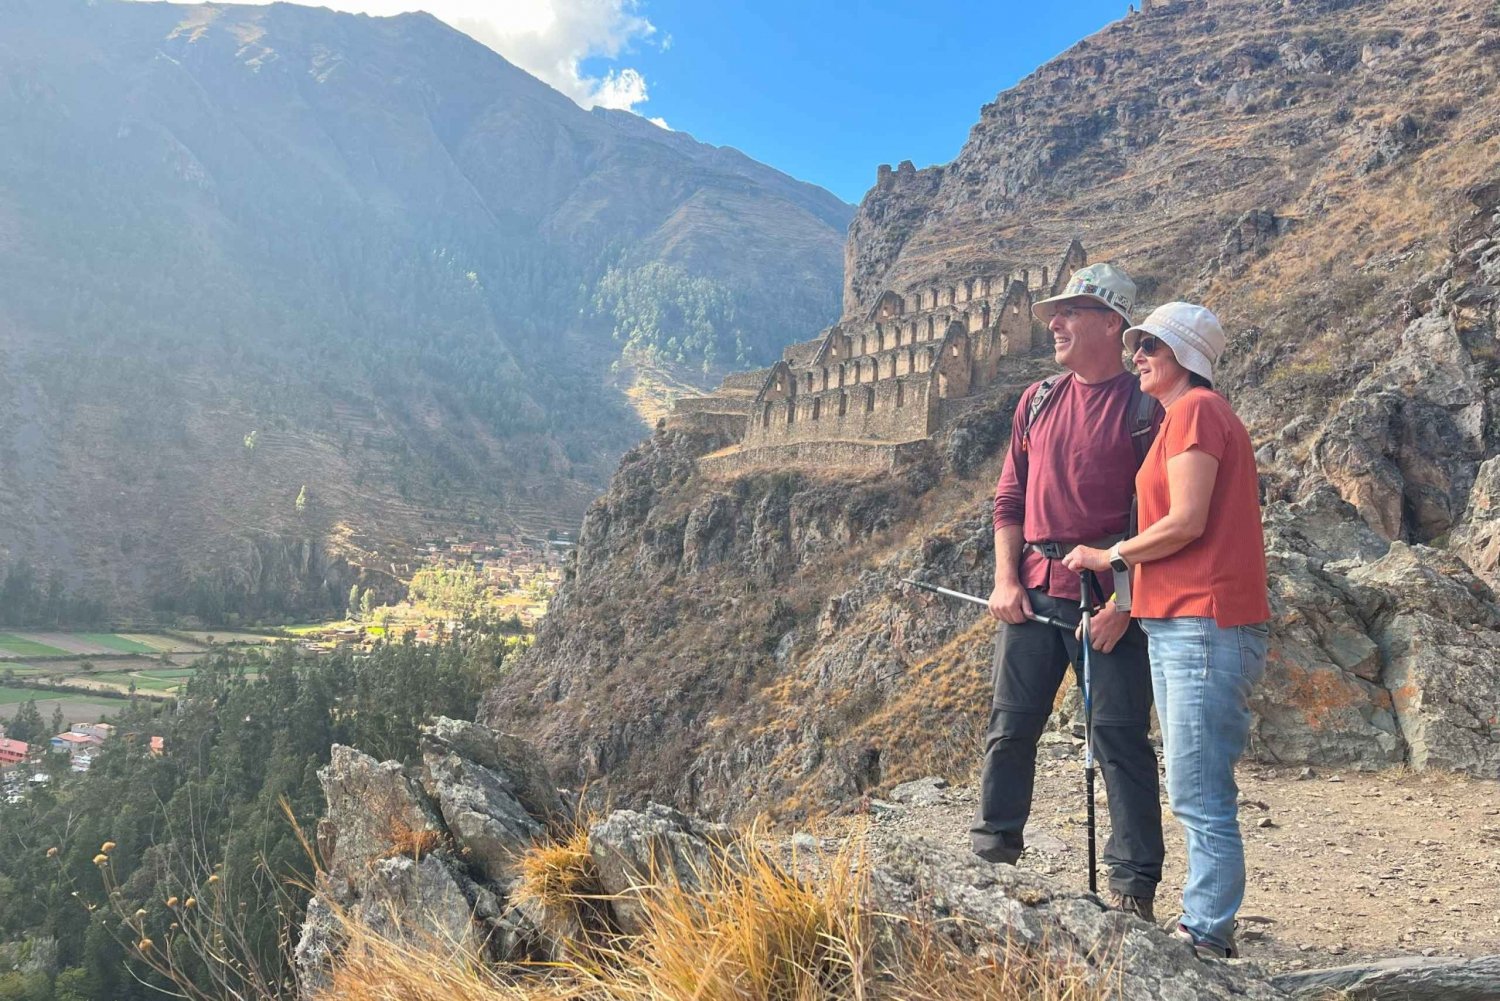 Pisaq, Ollantaytambo, Chinchero - Sacred Valley Experience